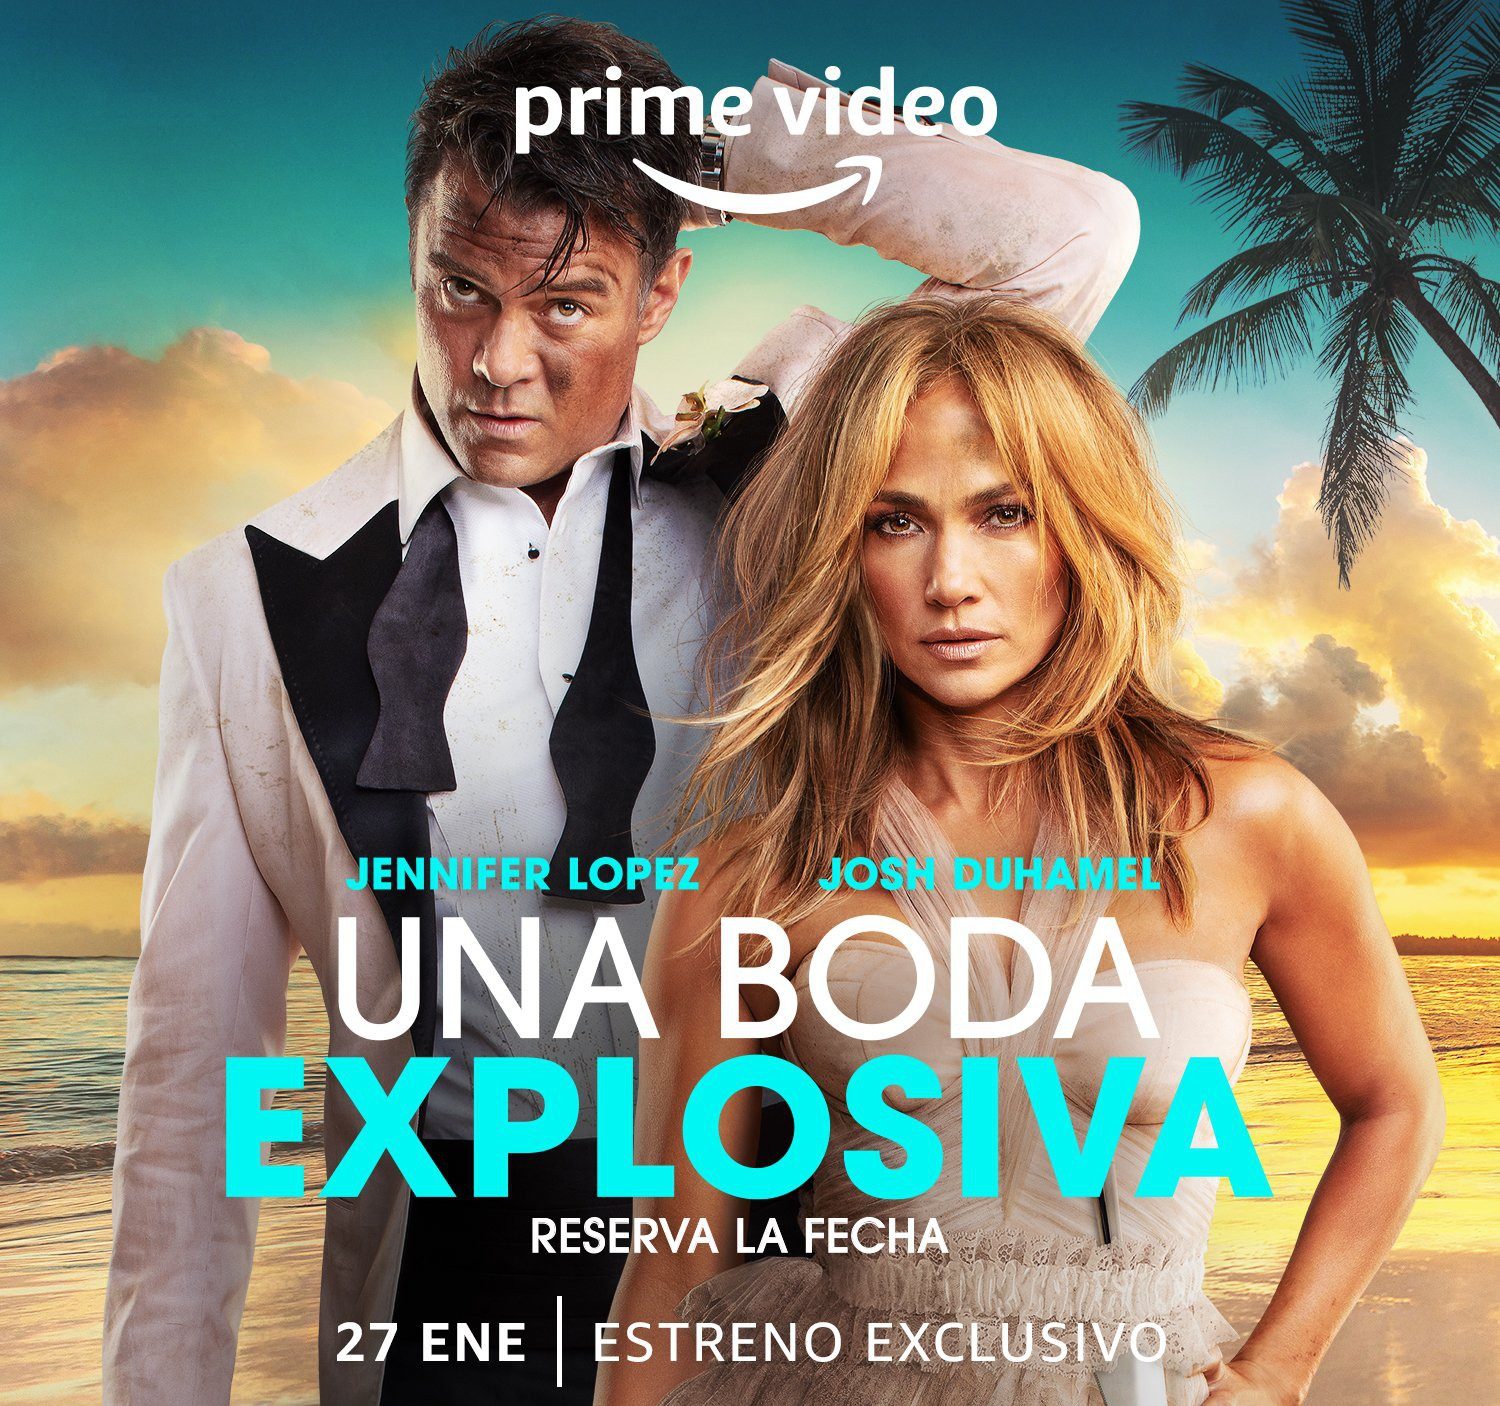 Prime Video presenta el tráilery el póster oficial de Una boda explosiva, la ardiente película de Jennifer López y Josh Duhamel